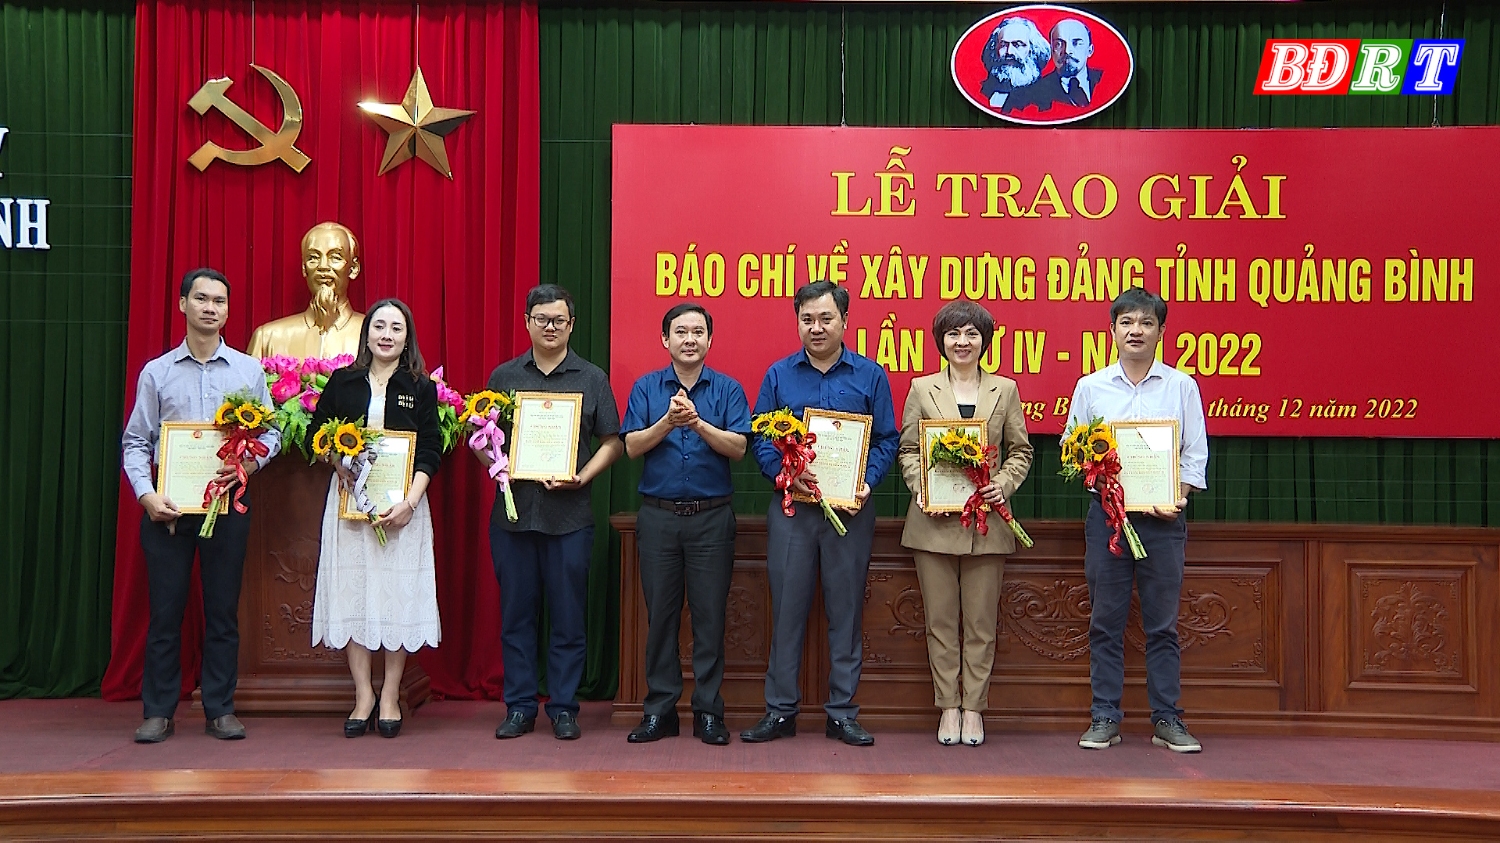 Phóng viên Lệ Hằng (thứ 2 từ trái qua) vinh dự được nhận giải Báo chí xây dựng Đảng tỉnh Quảng Bình năm 2022